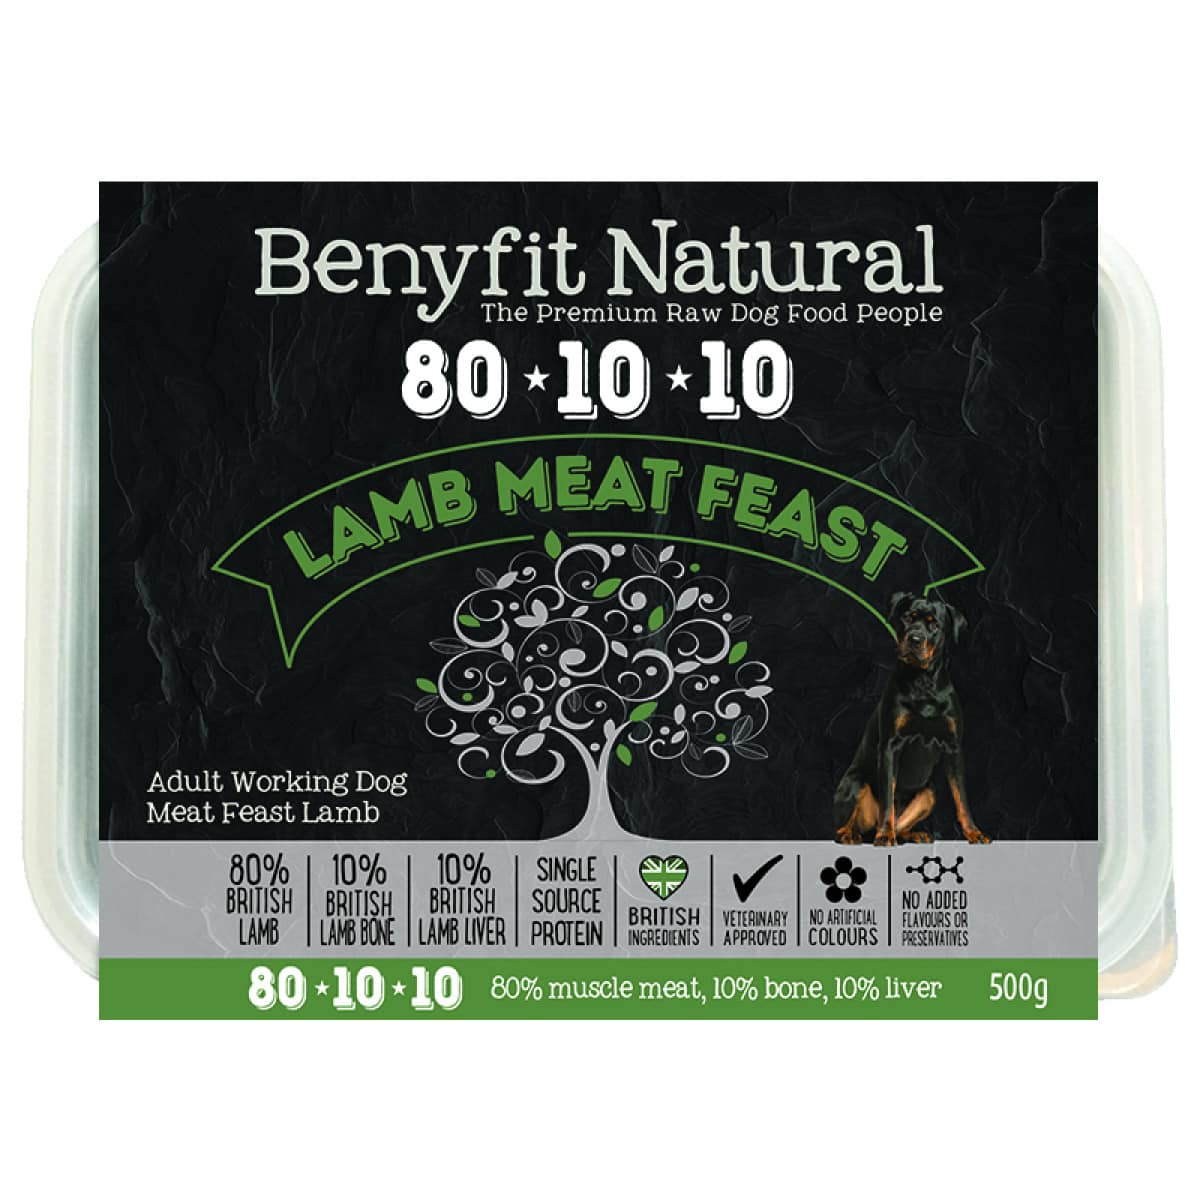 Benyfit Natural 80/10/10 - Lamb Meat Feast 500g Main Image